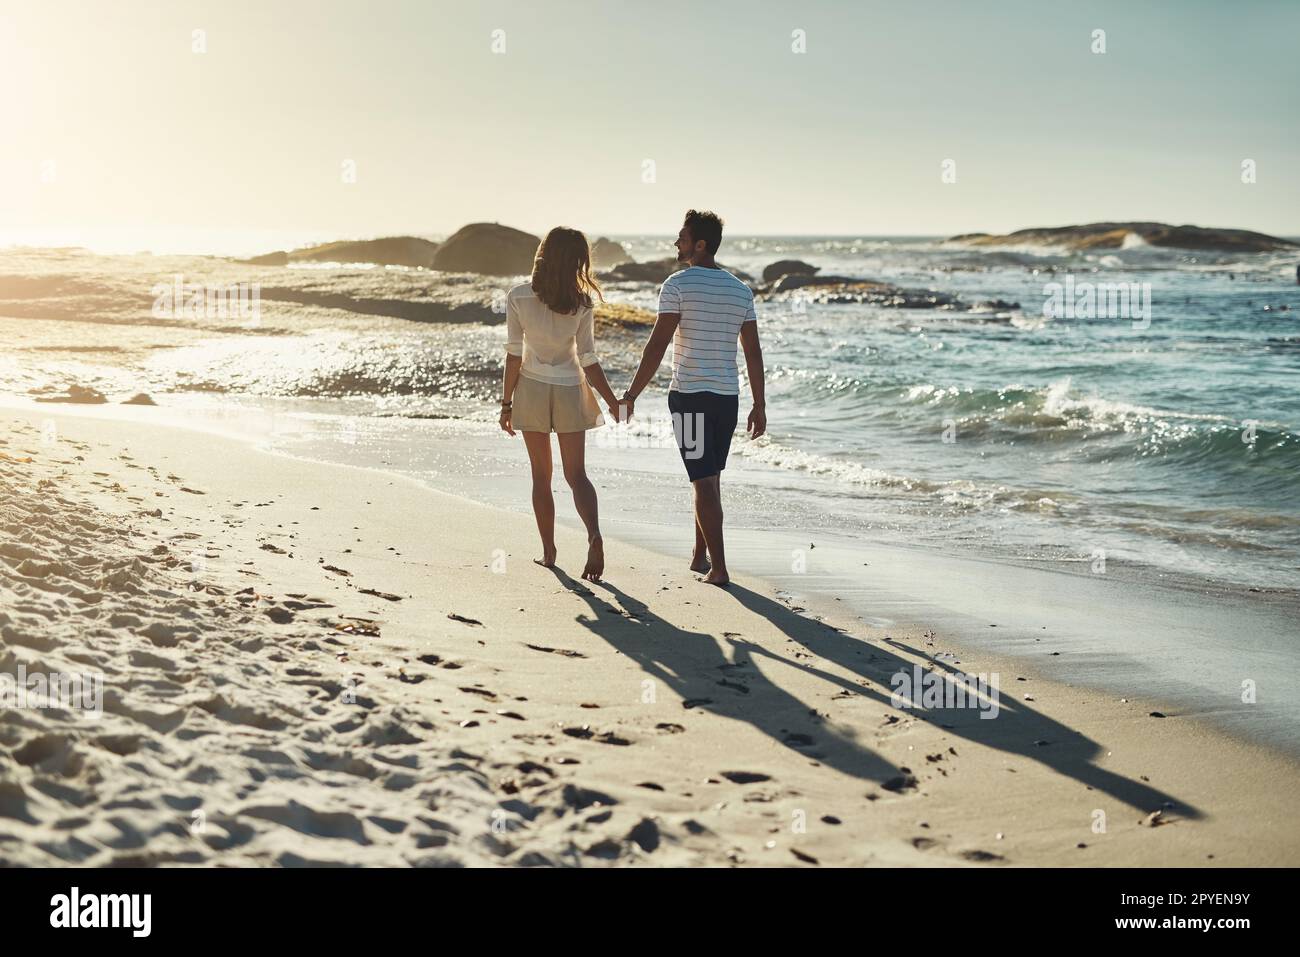 Sie genießen lange Spaziergänge am Strand. Rückblick auf ein sorgenfreies junges Paar, das Hand in Hand am Strand entlang geht. Stockfoto